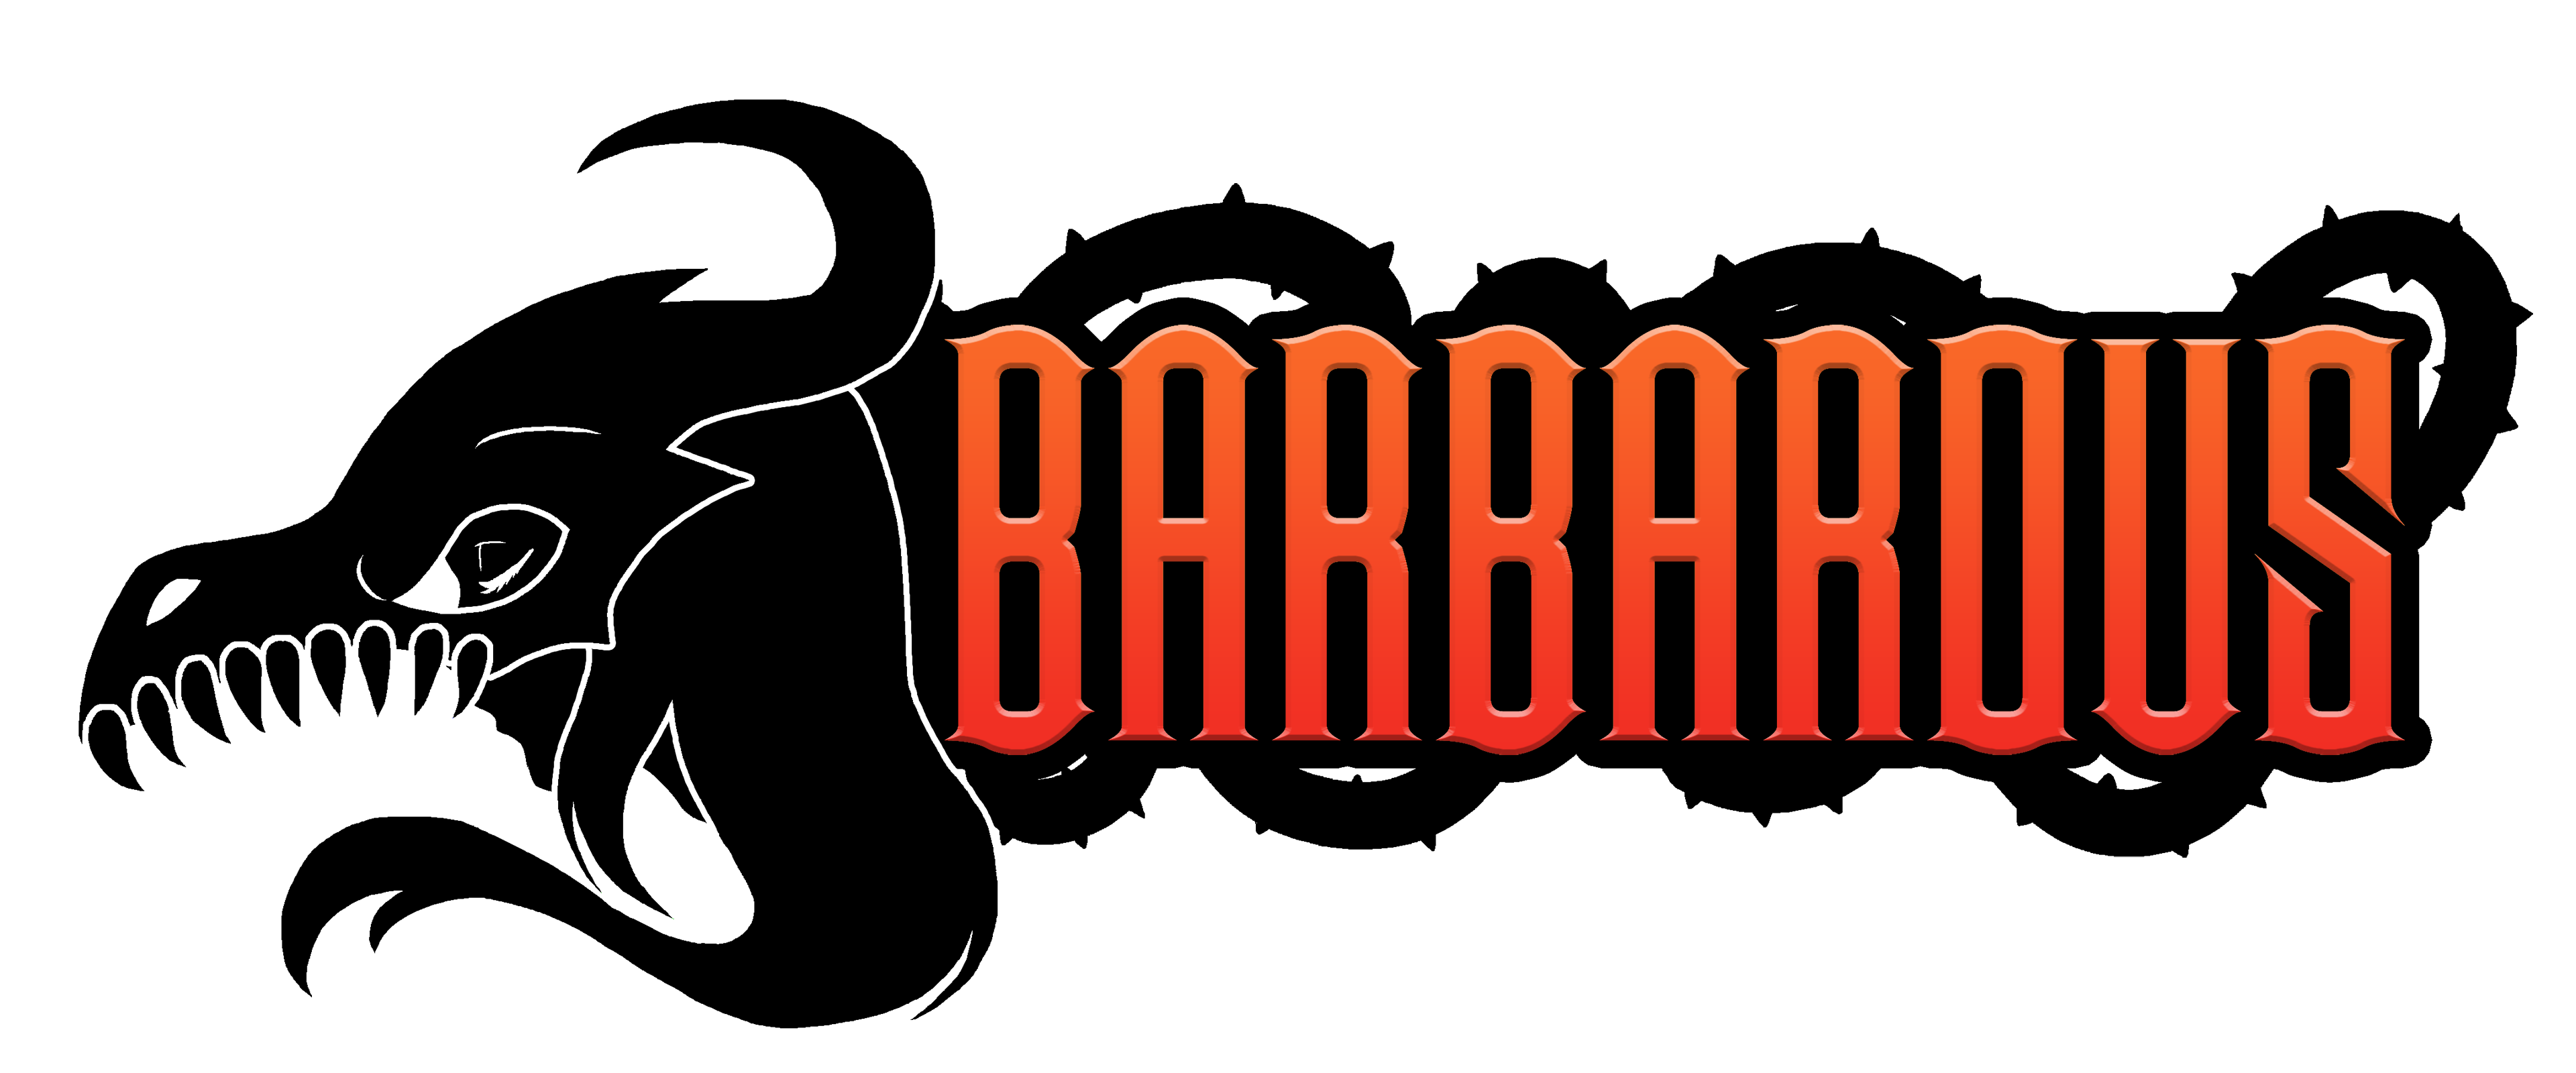 Barbarous